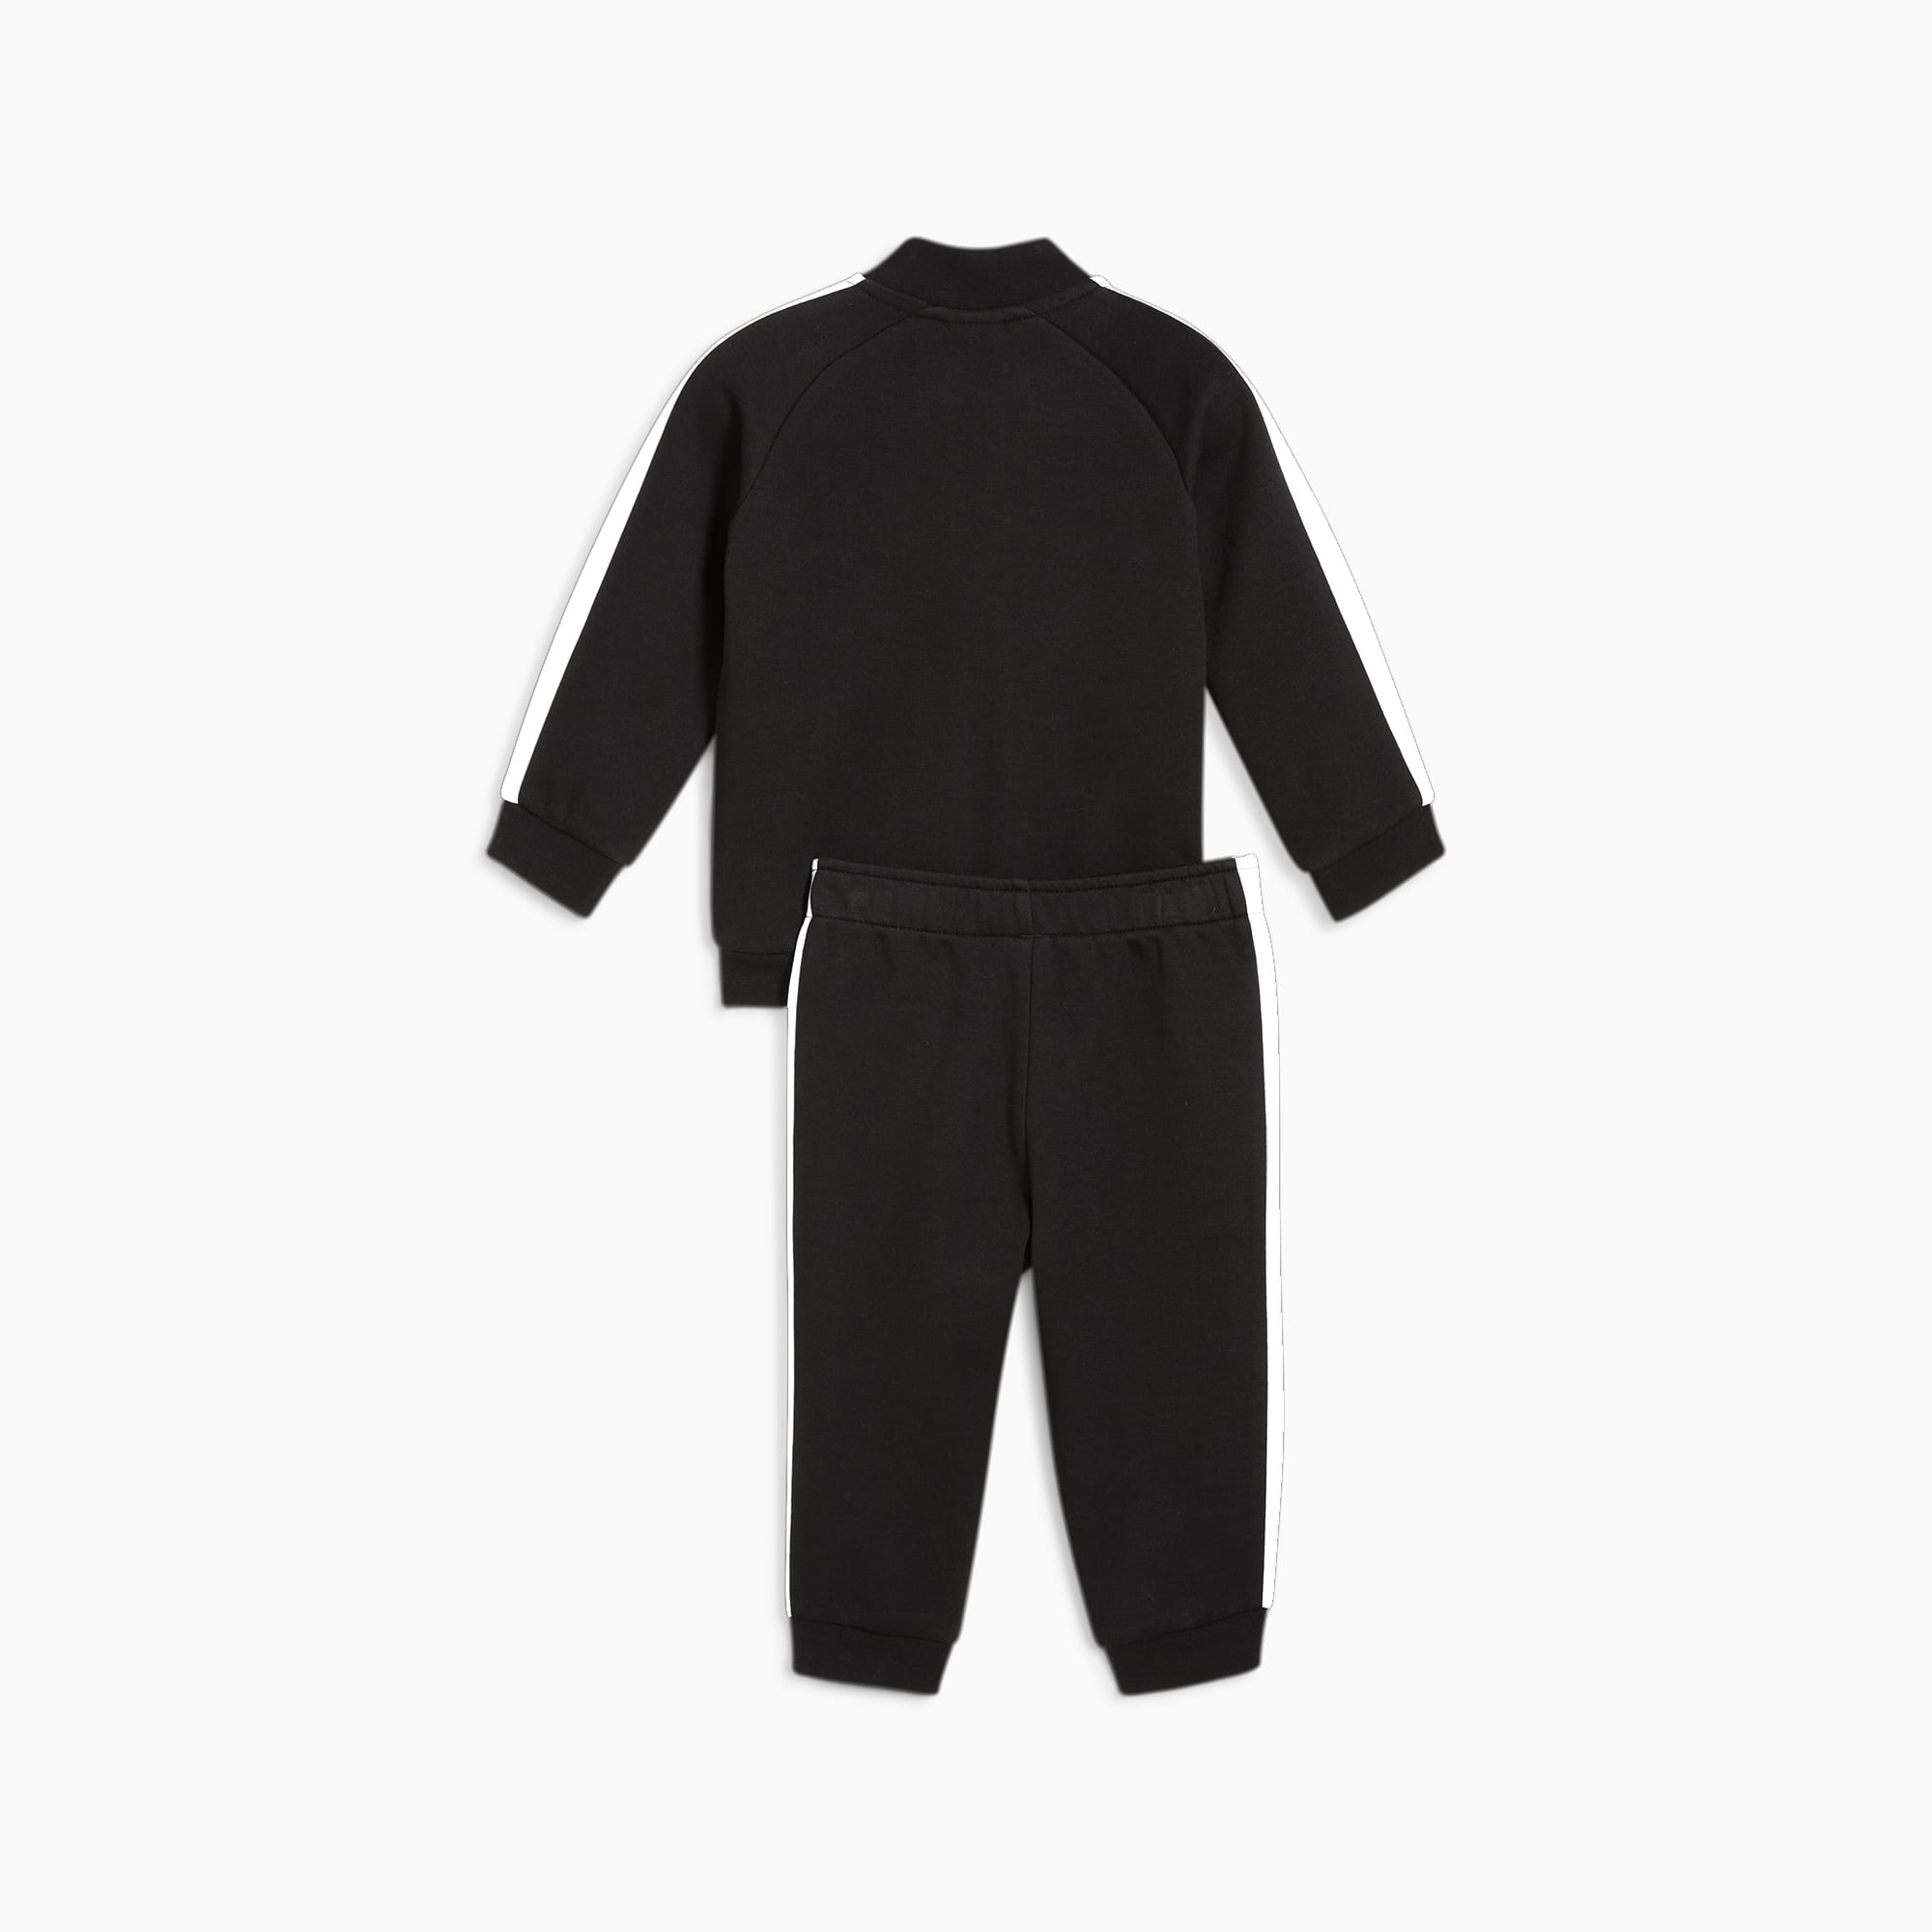 PUMA MINICATS T7 ICONIC Trainingsanzug Baby Für Kinder, Schwarz, Größe: 74, Kleidung